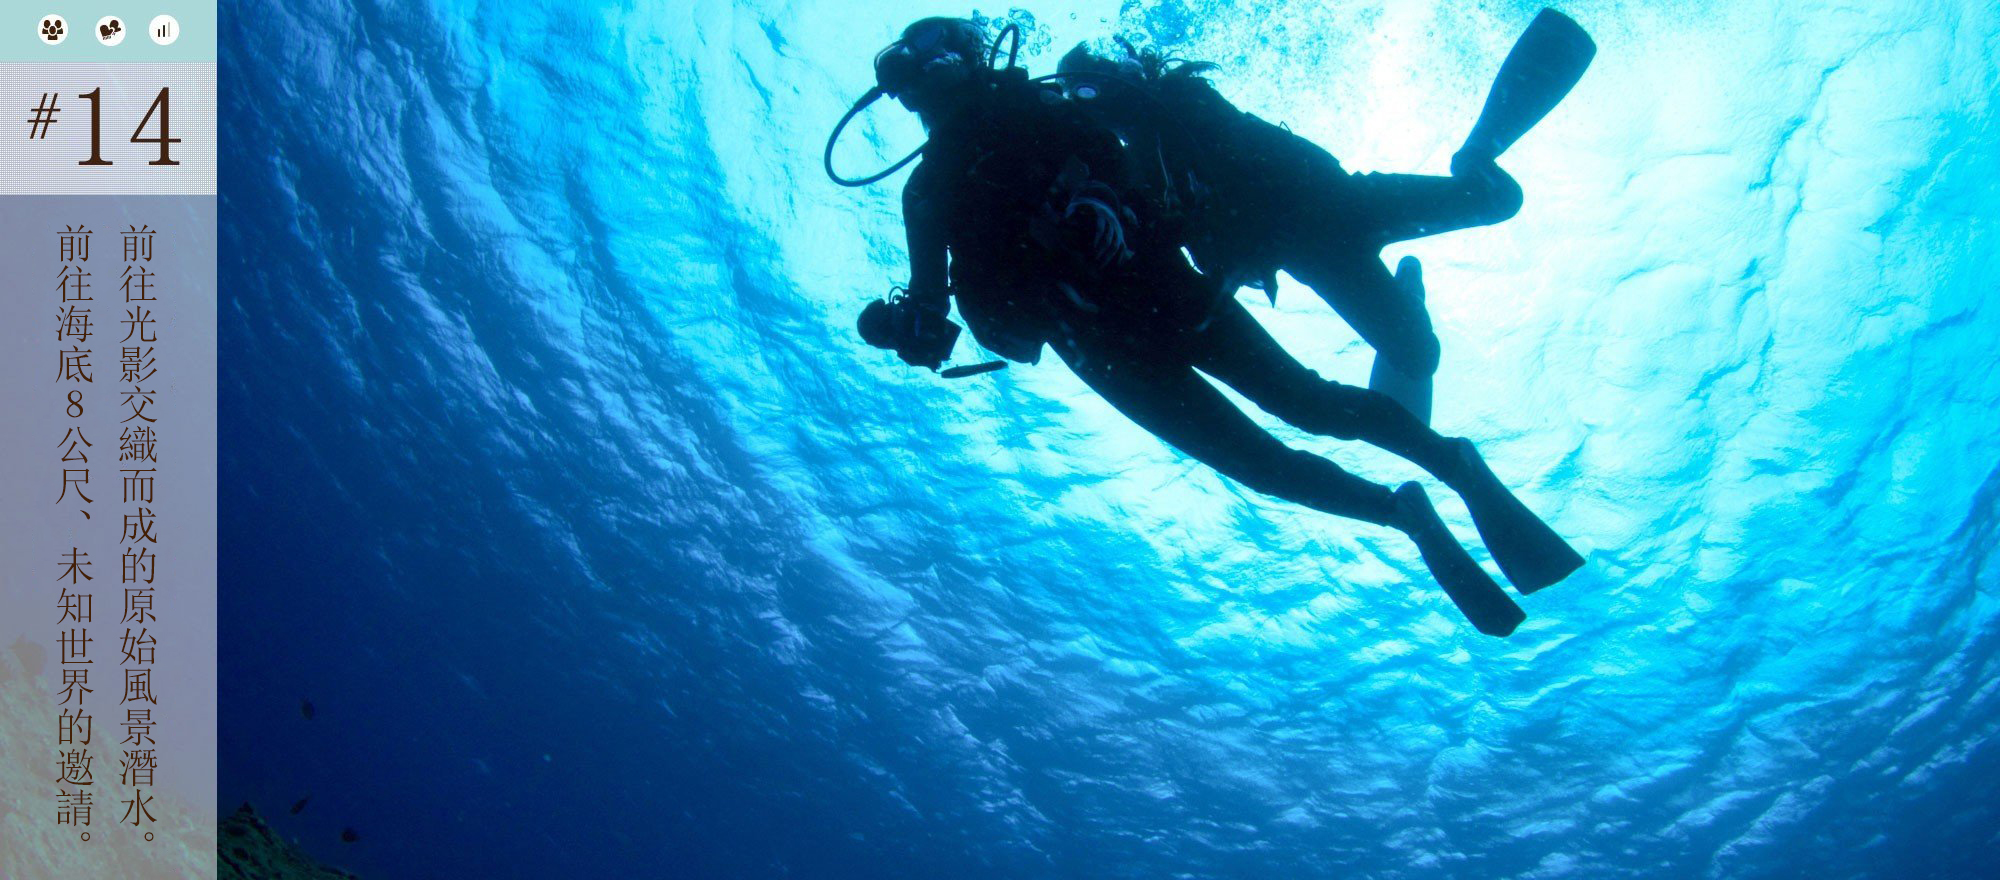 前往光影交織而成的原始風景潛水。前往海底8公尺、未知世界的邀請。